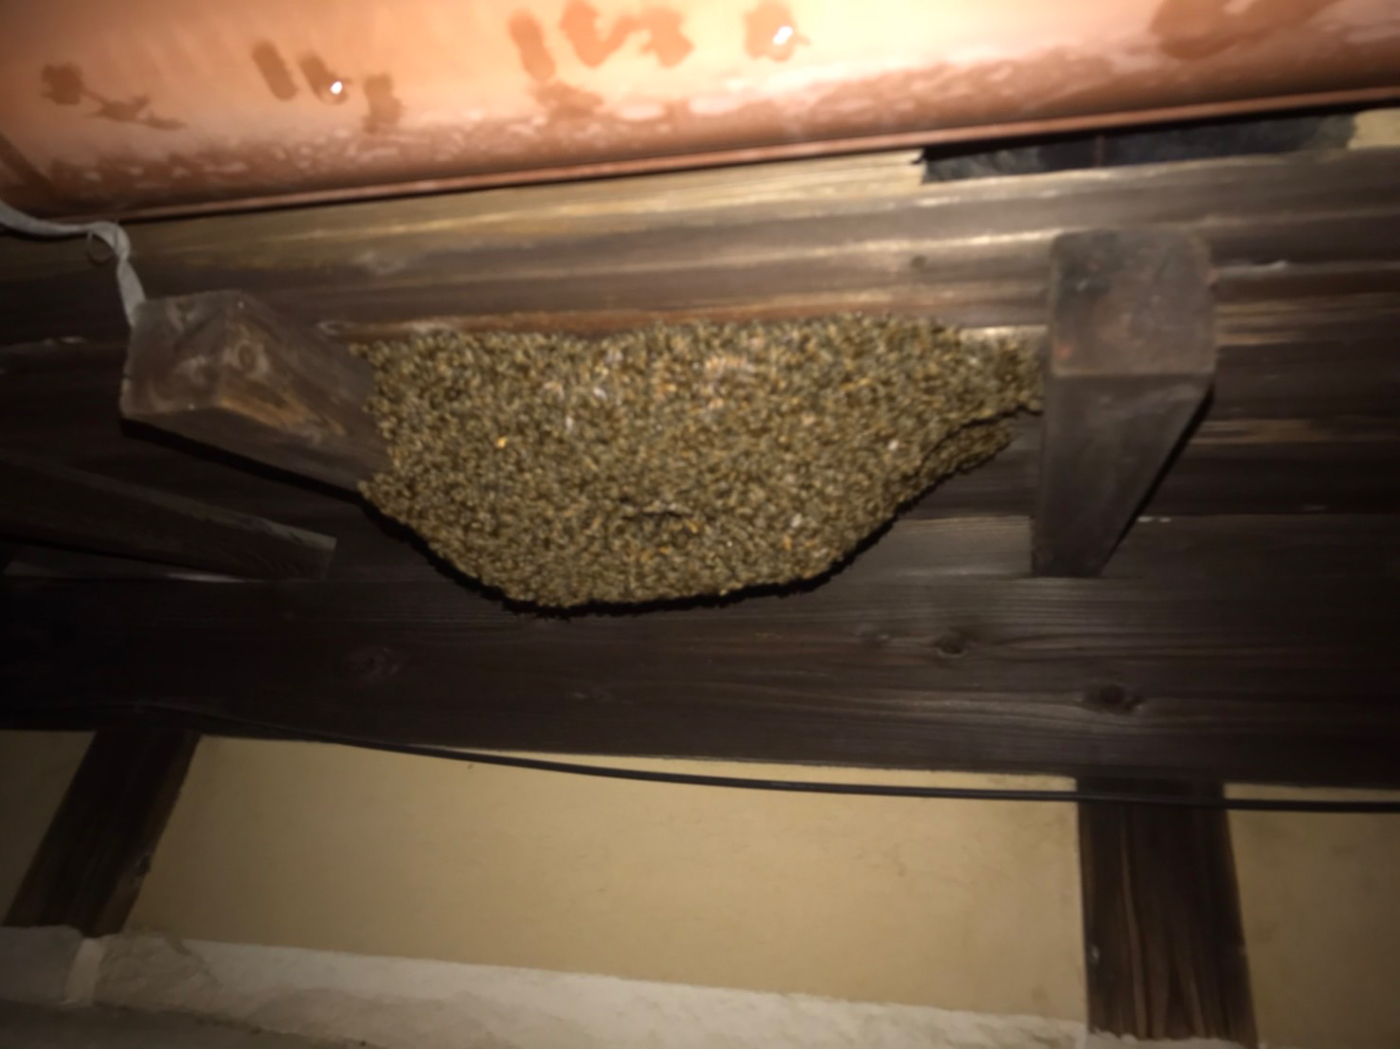 屋根裏のミツバチの巣